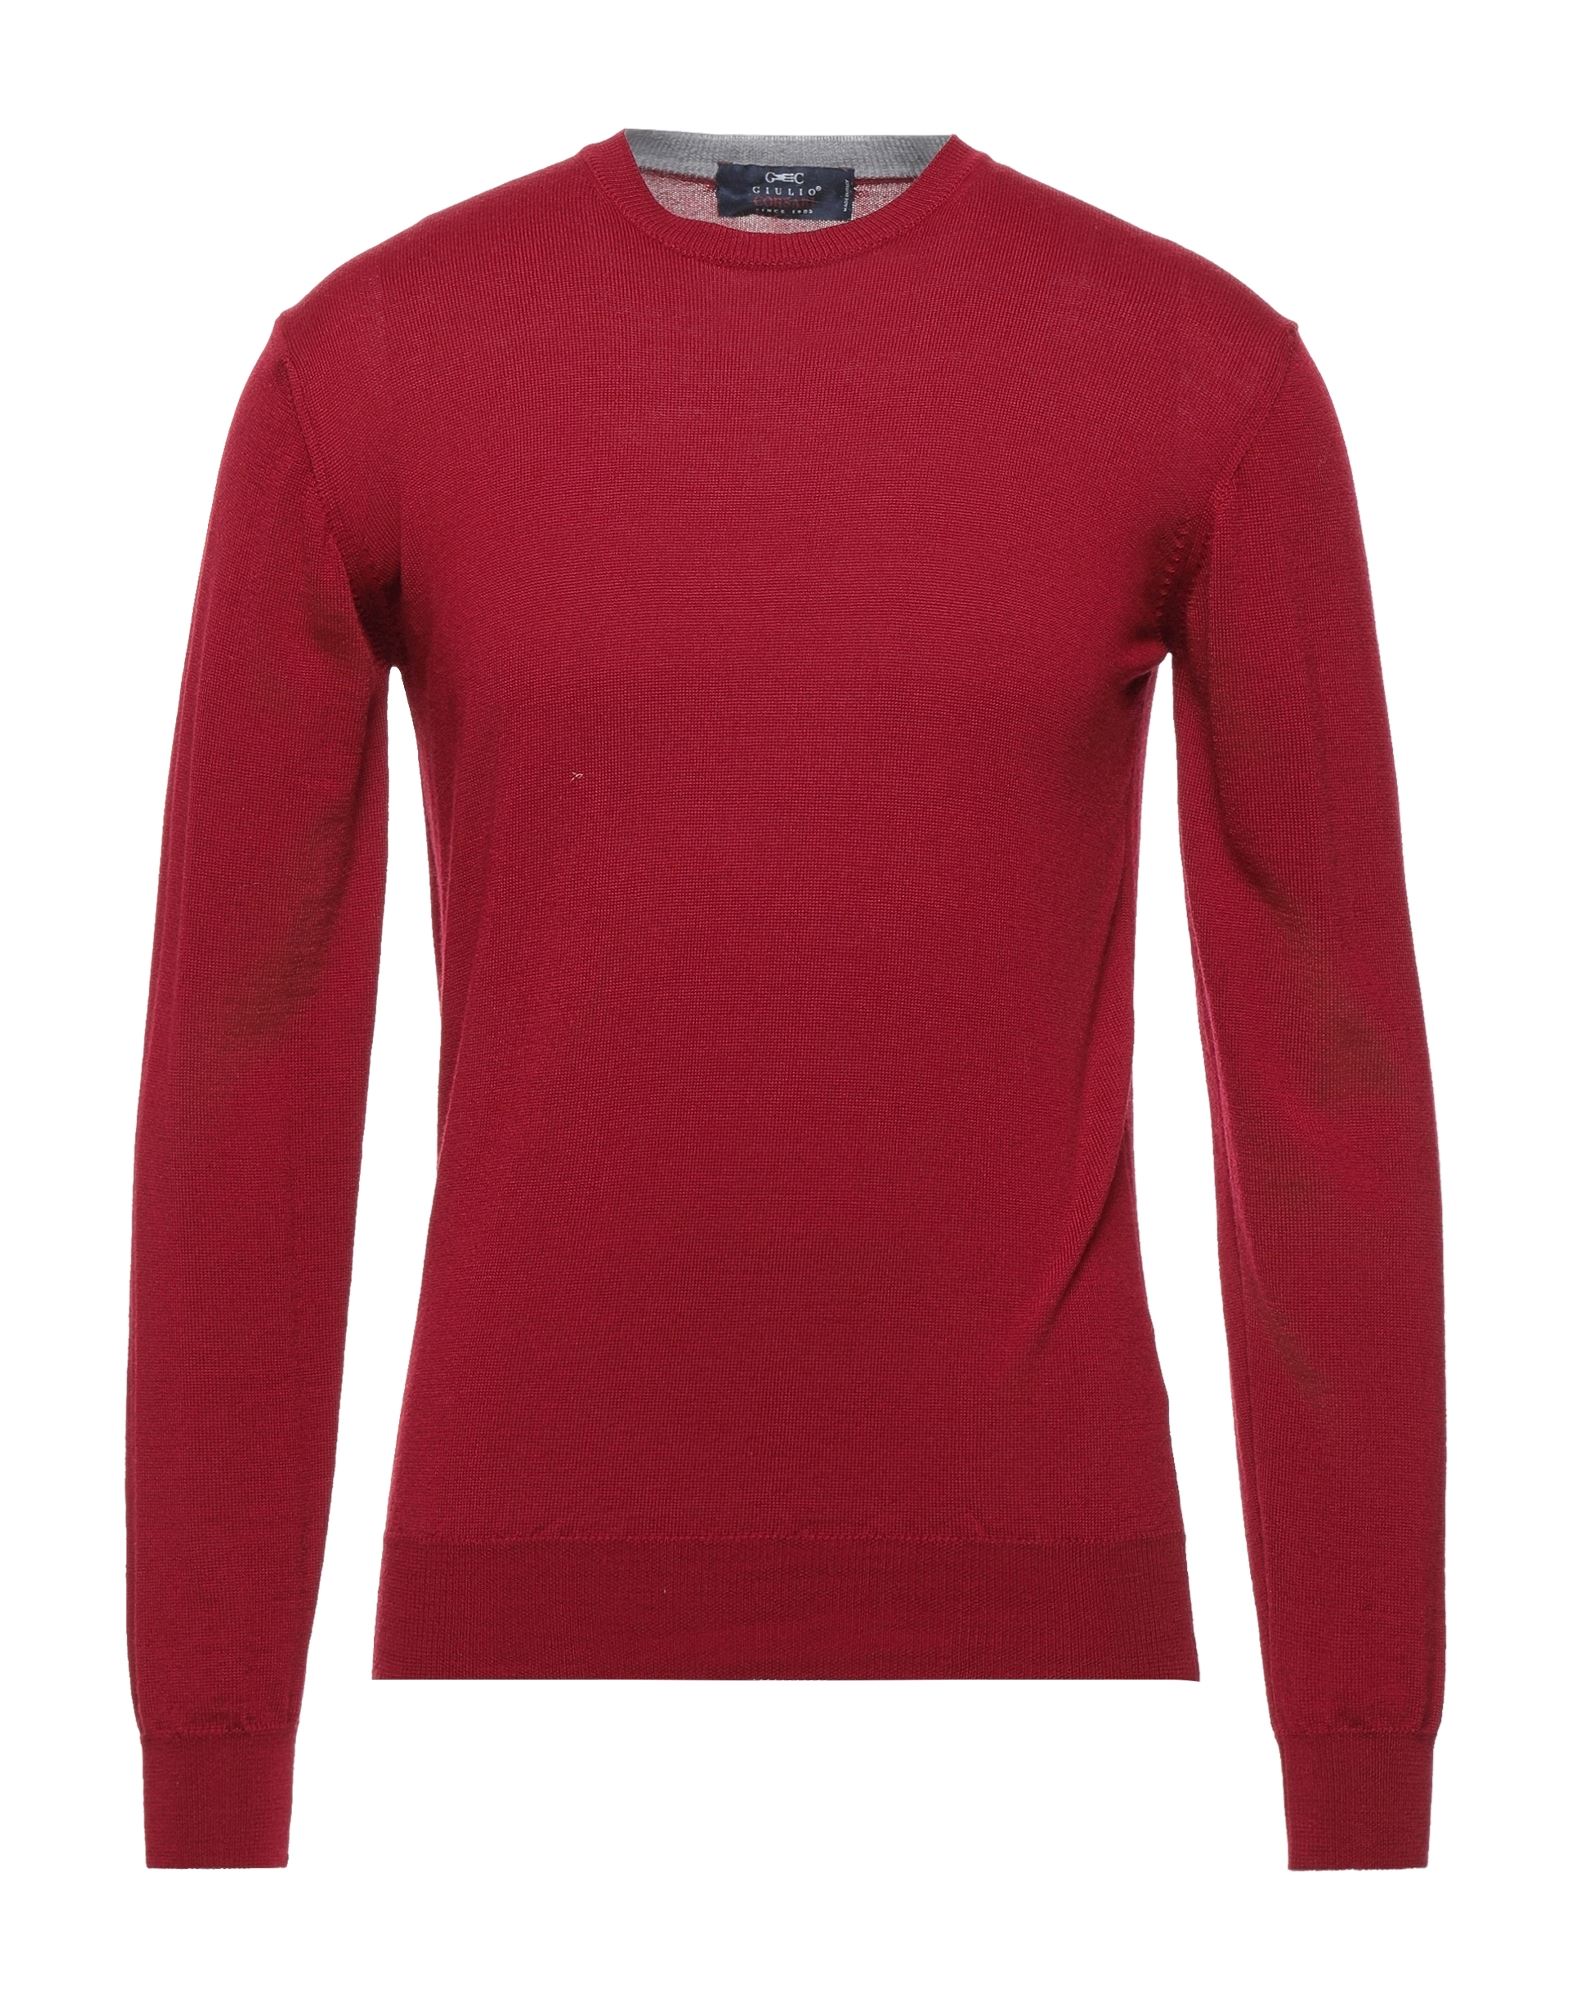 Giulio Corsari Sweaters In Red